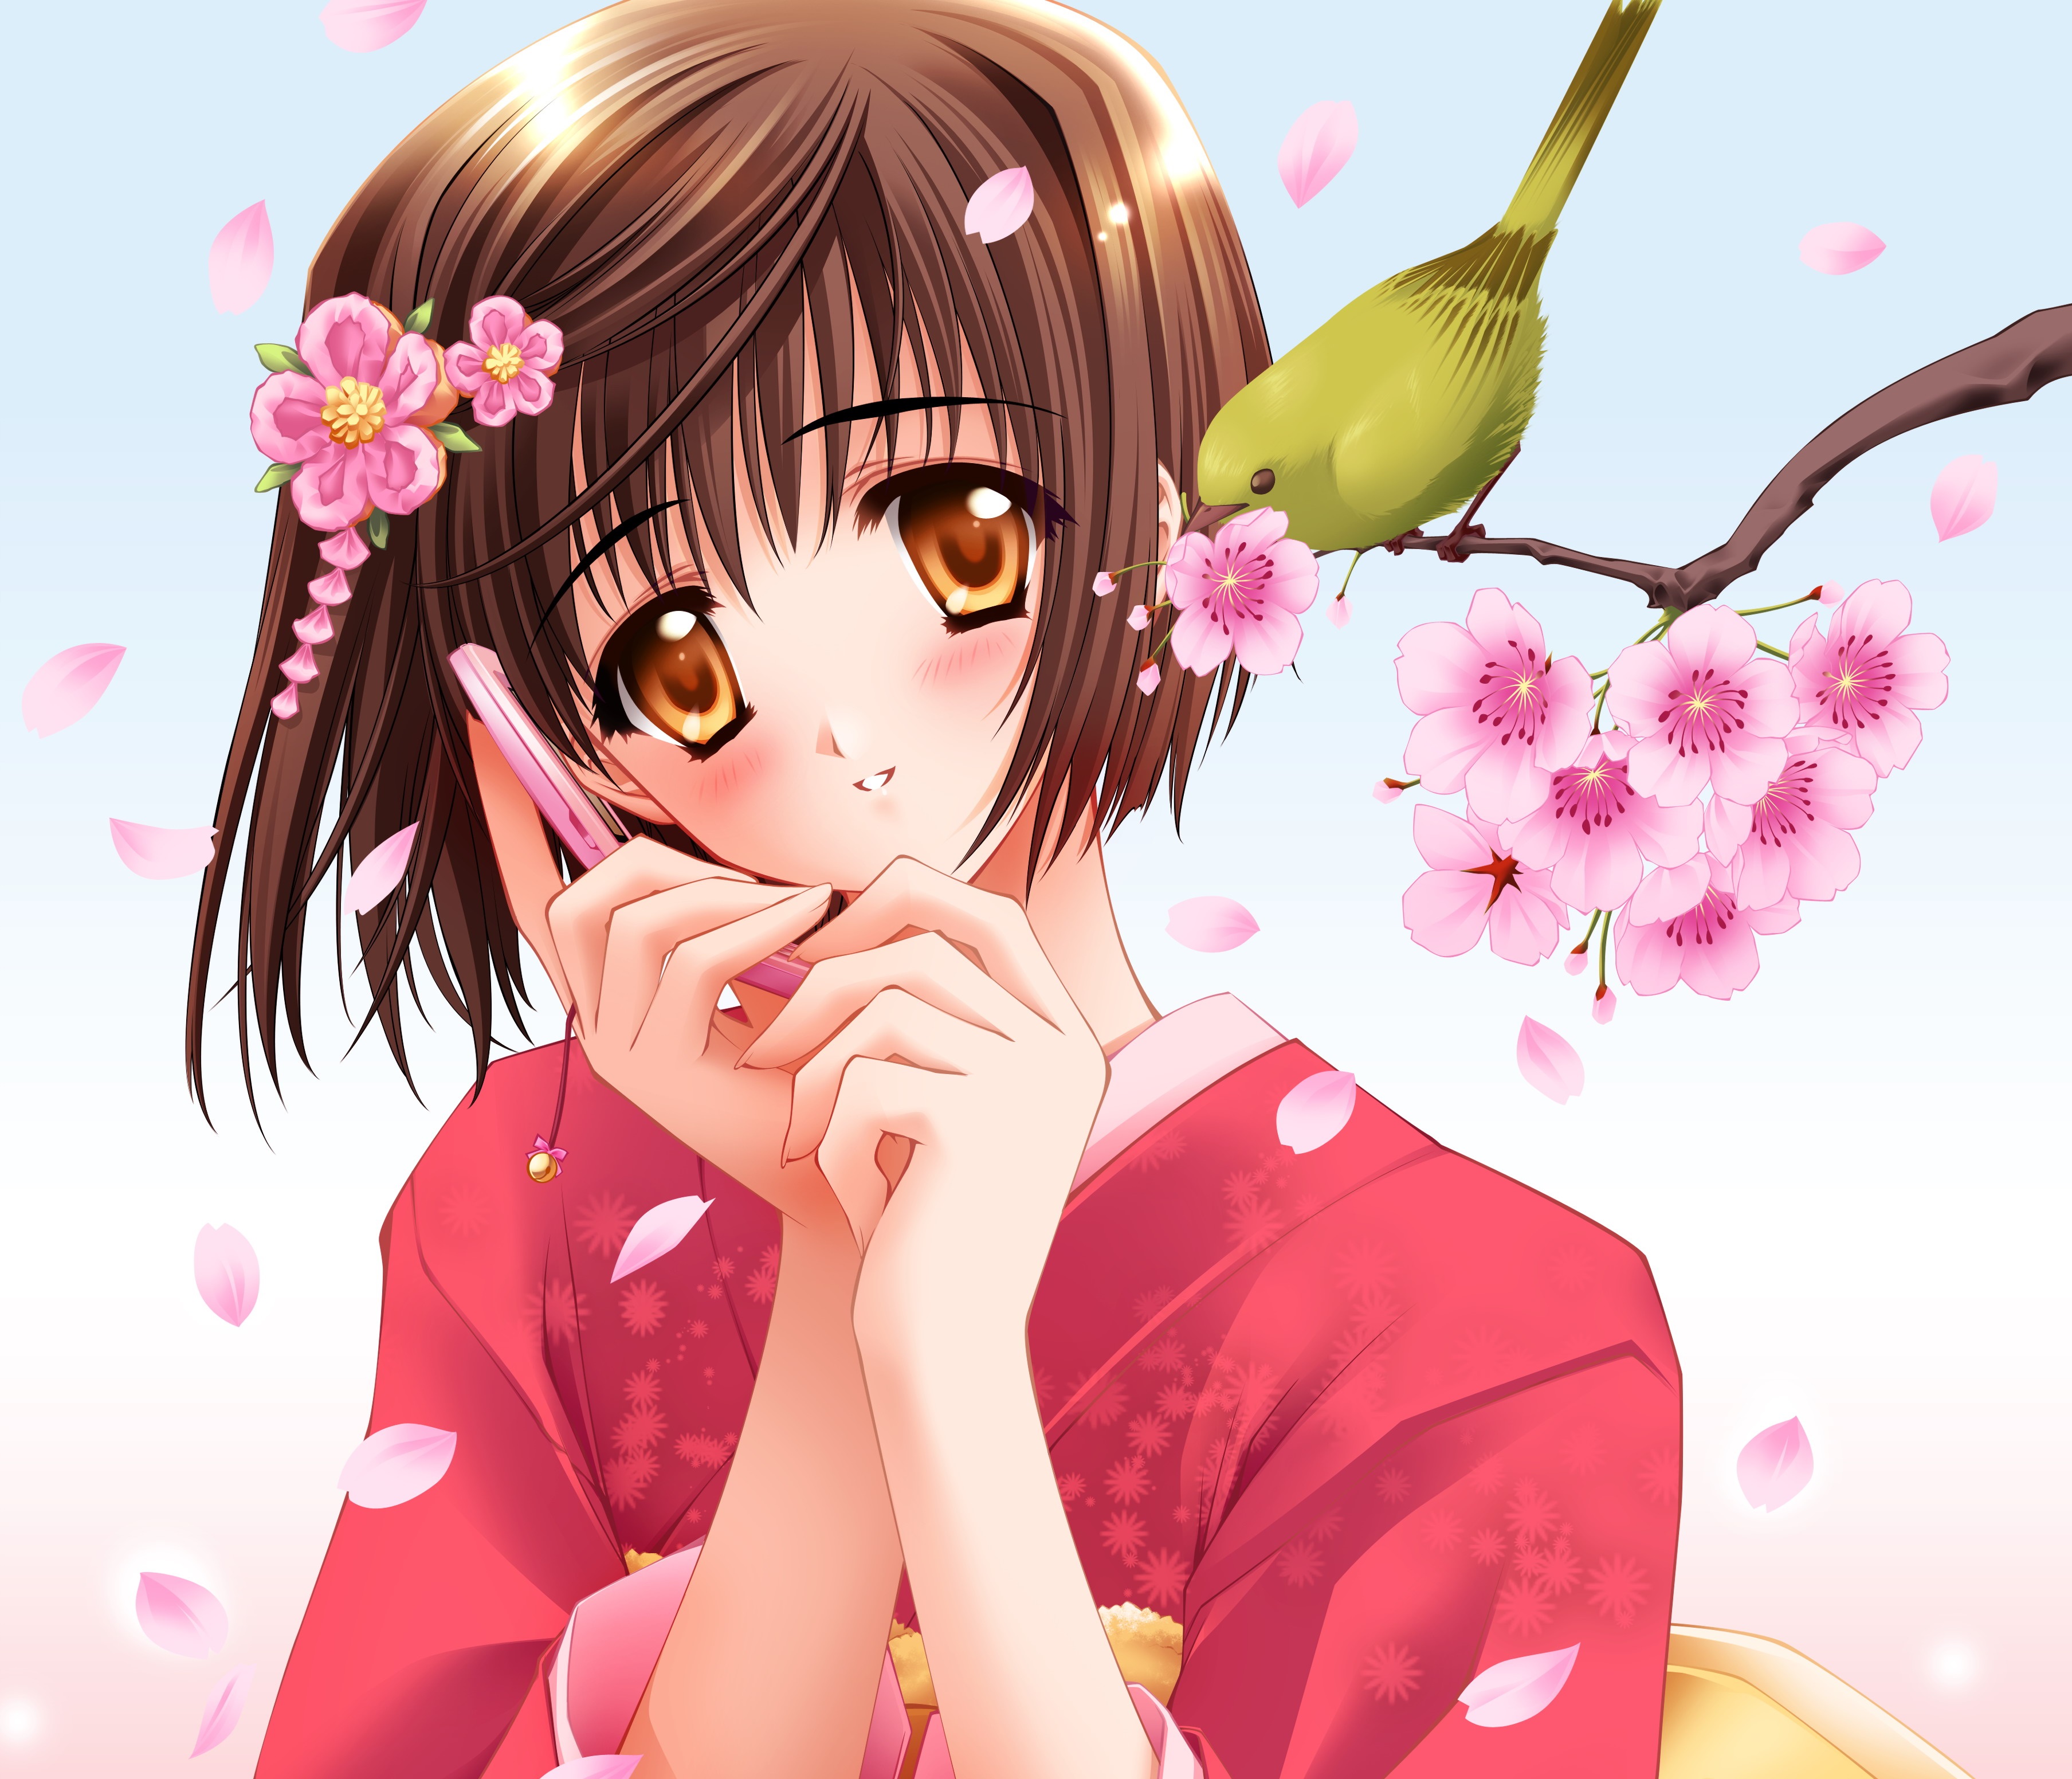 Bird Blush Brown Hair Cherry Blossom Kimono Orange Eyes Petal Phone Short Hair Smile 3616x3104